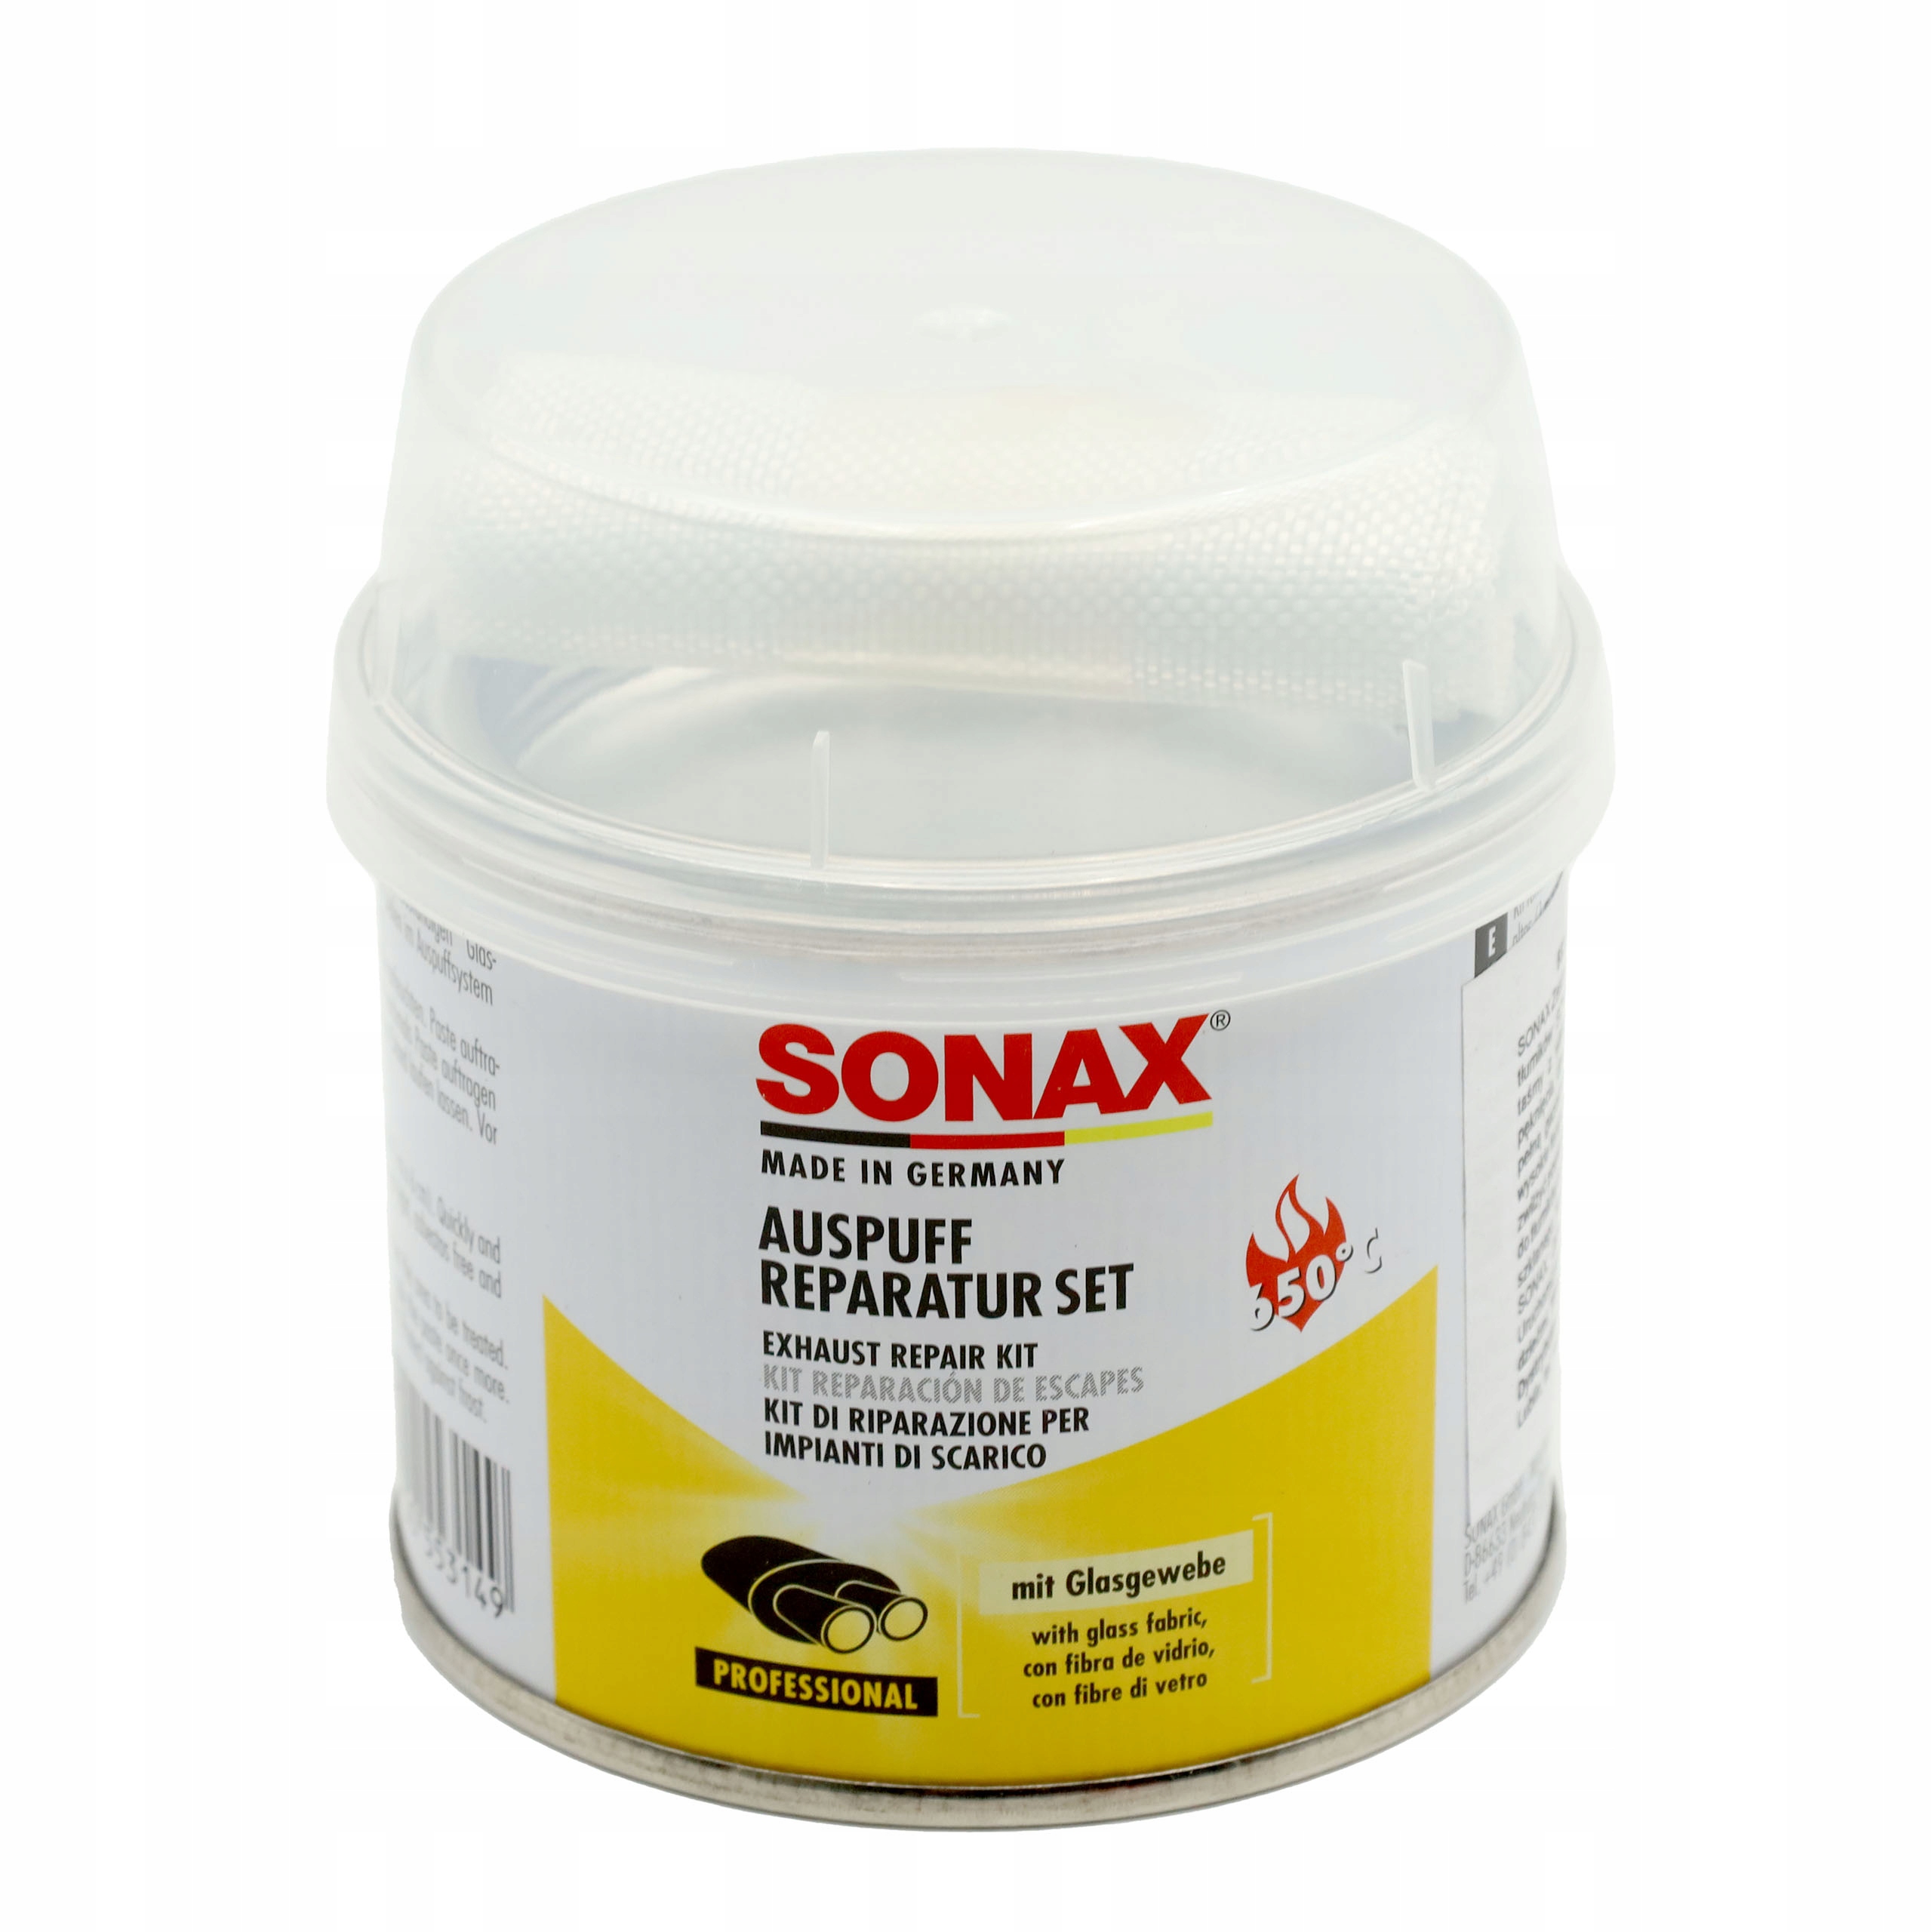 Sonax Professional Auspuff Reparatur Set 200ml